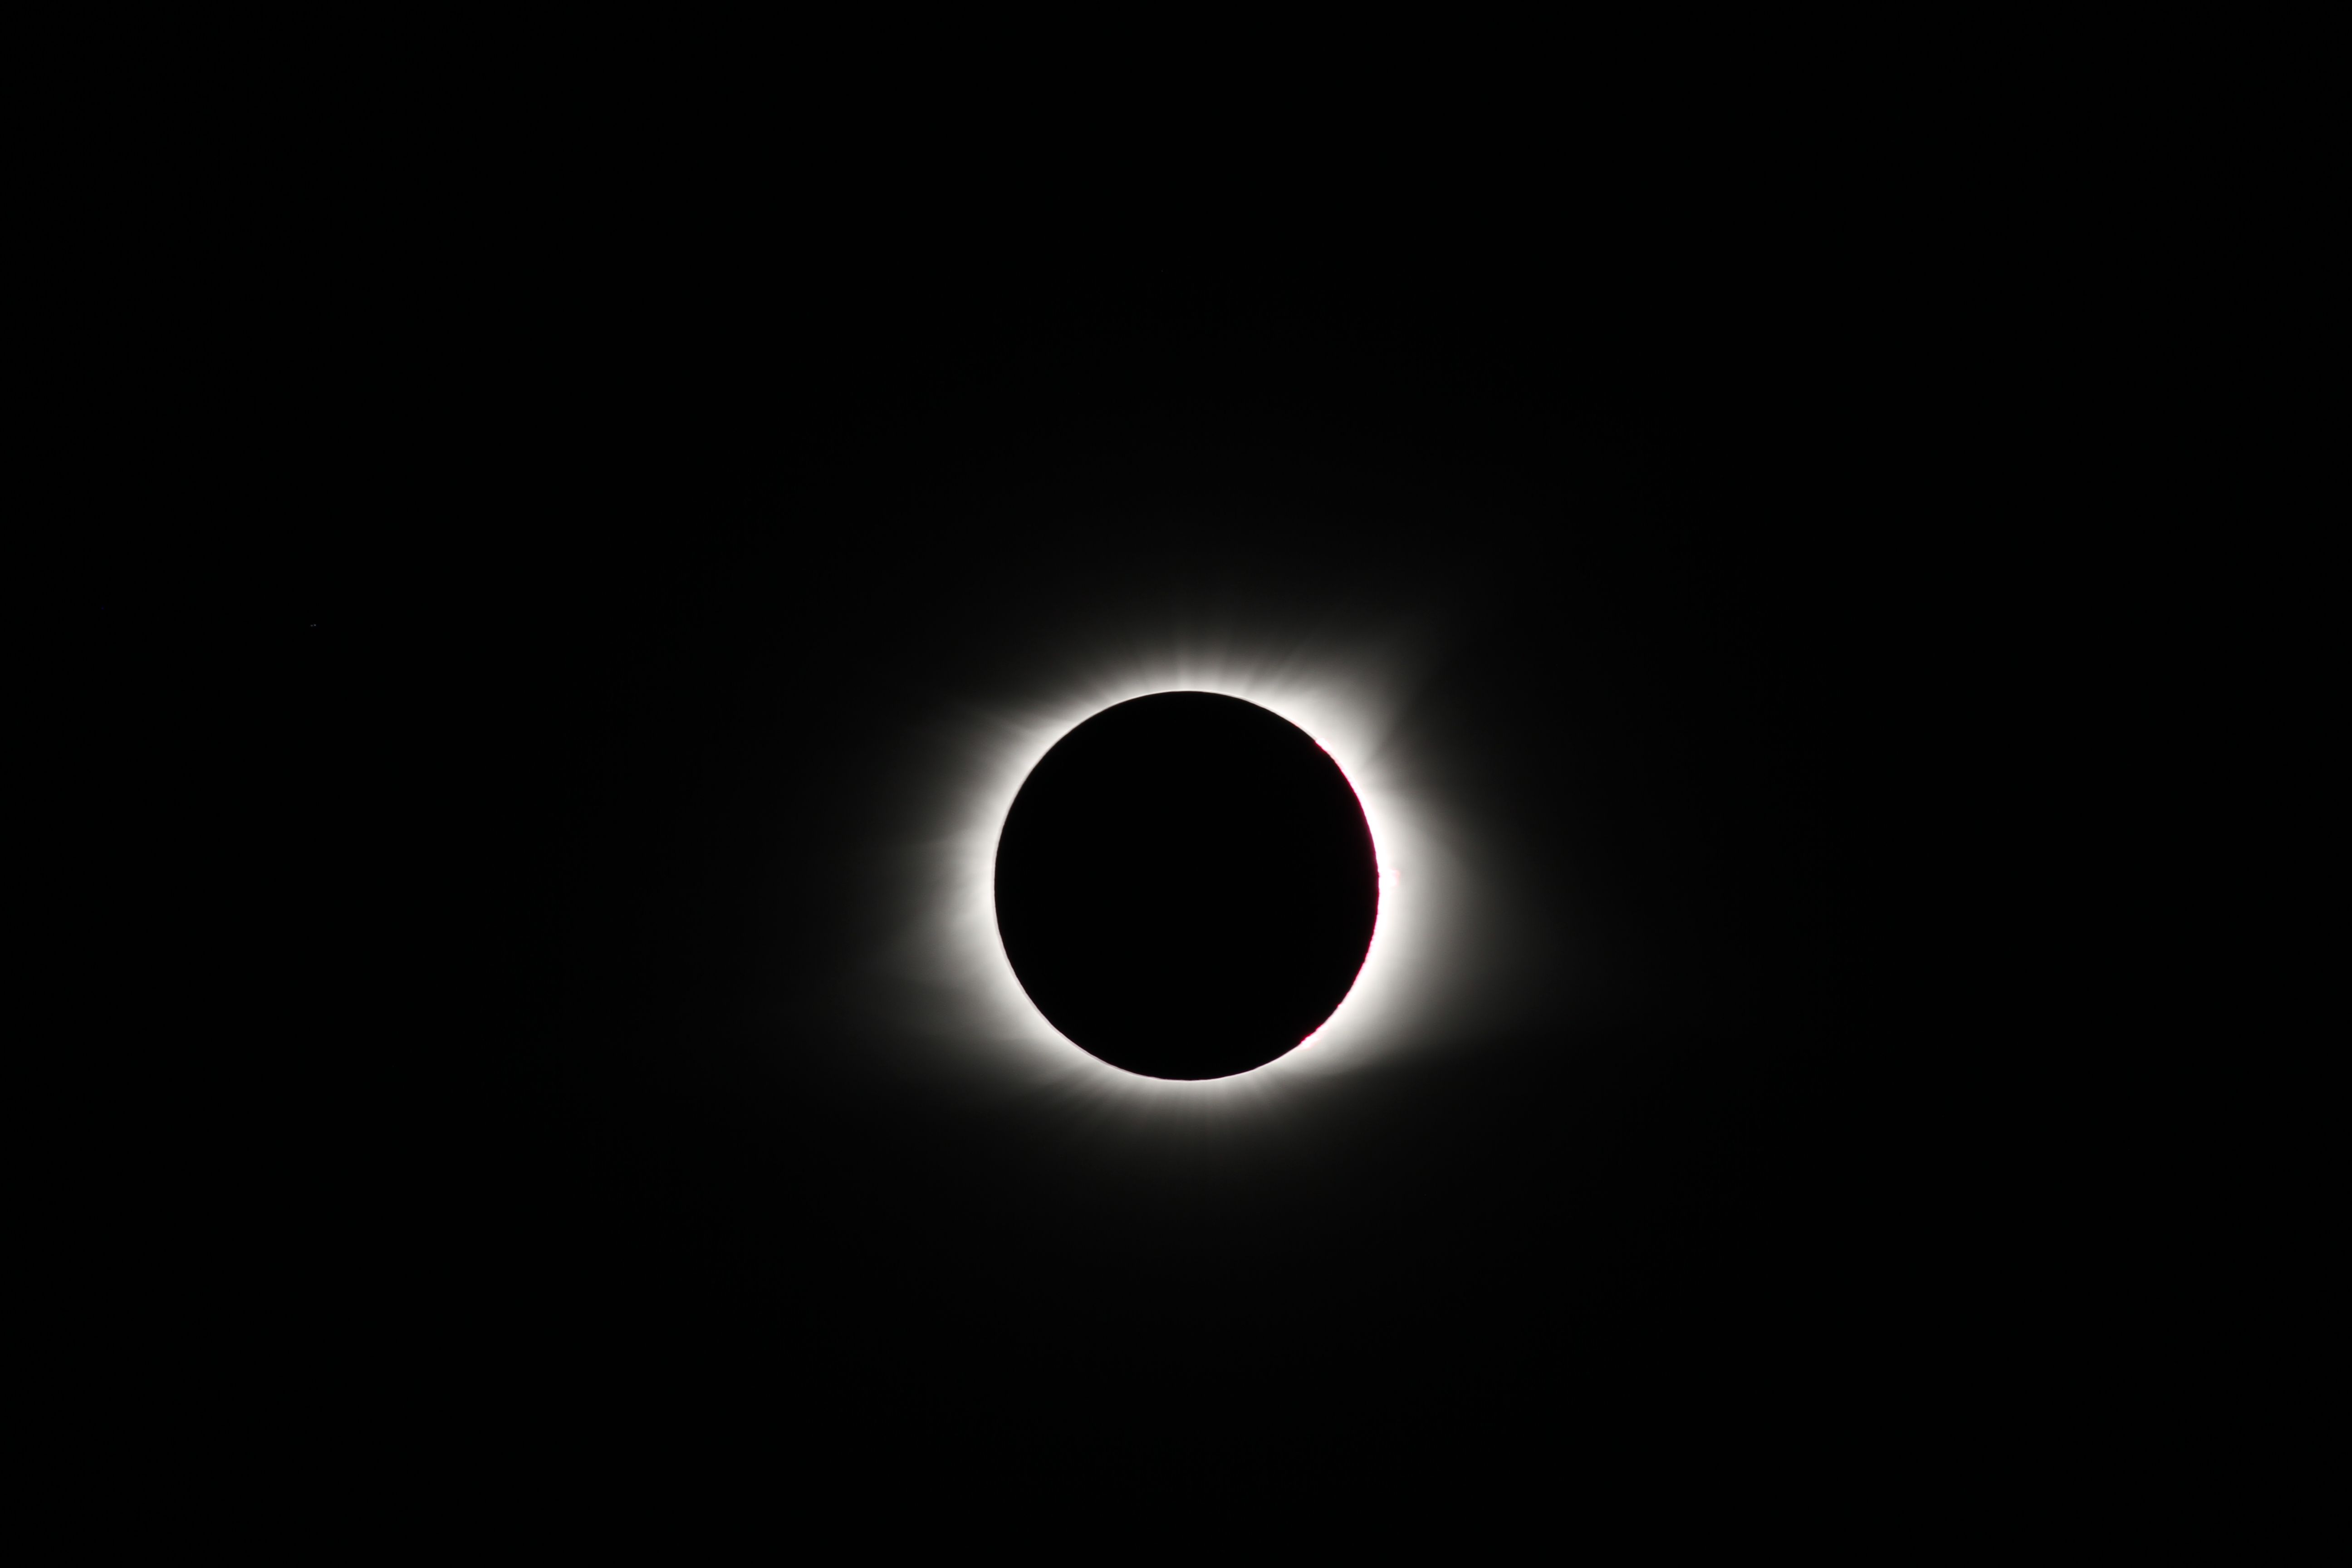 Eclipse_Emerge_Corona_2017_01.JPG